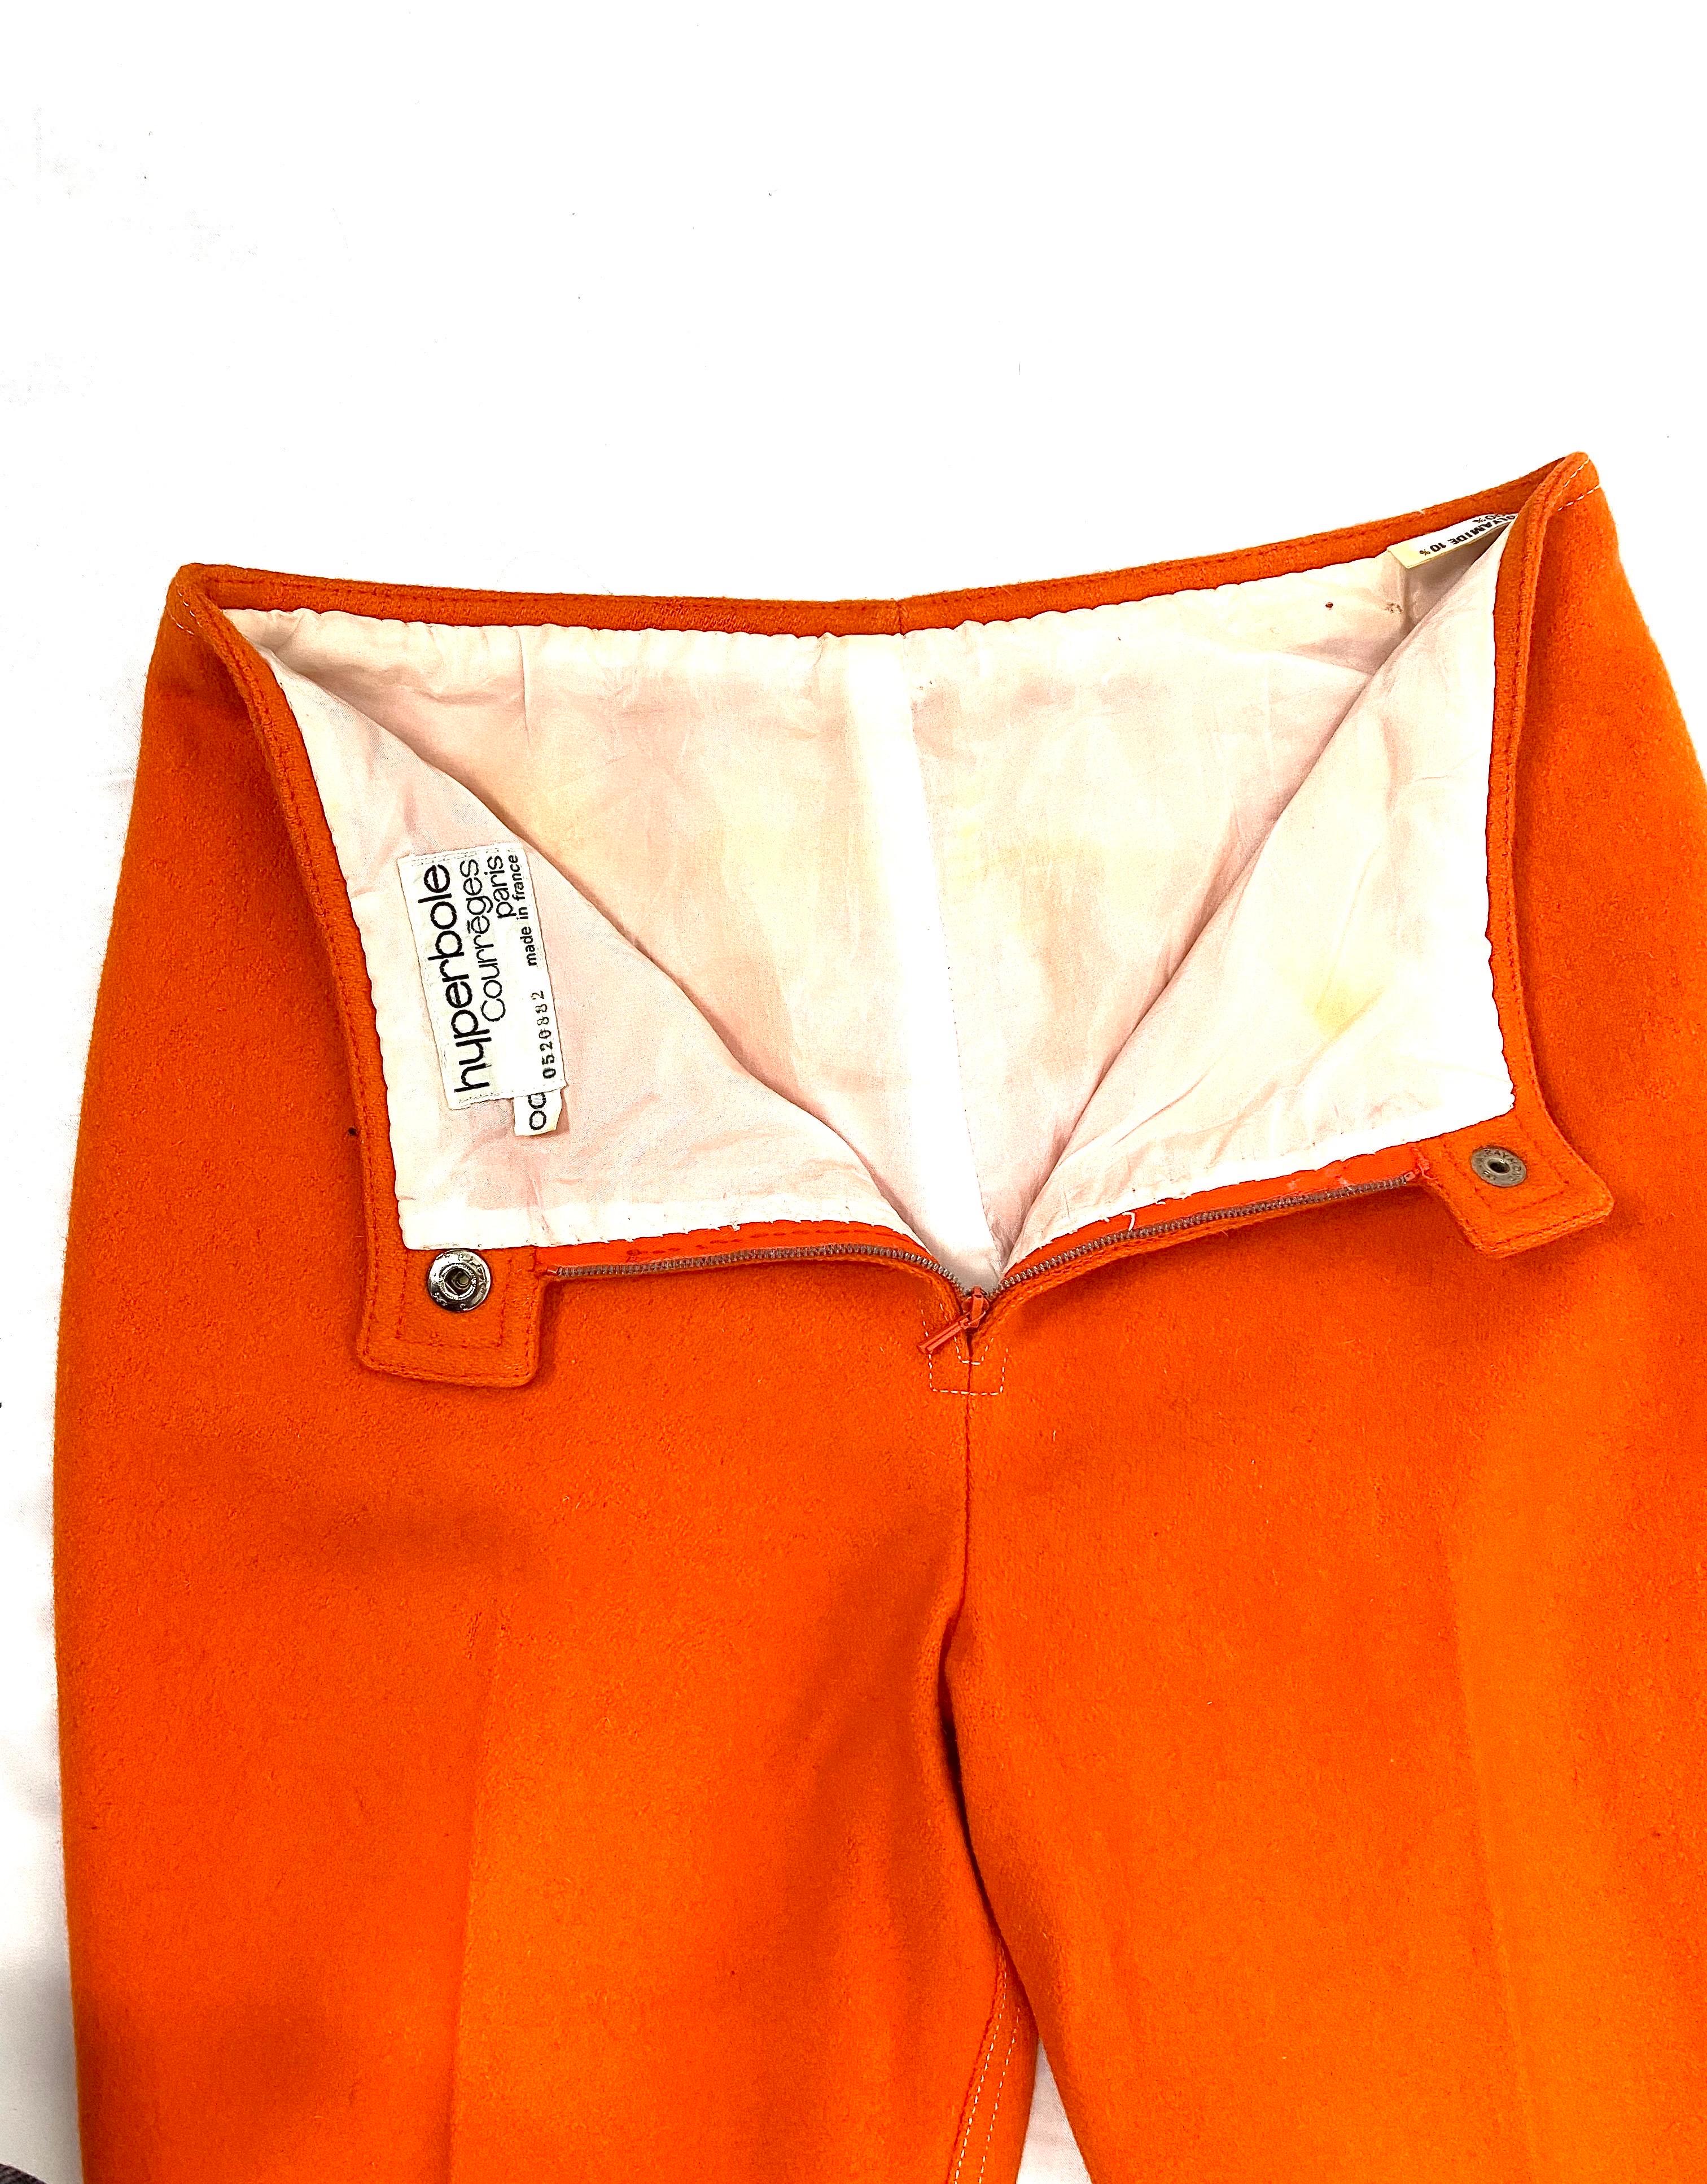 A. Courréges Hyperbole wool orange trouser suit from 1970 For Sale 6